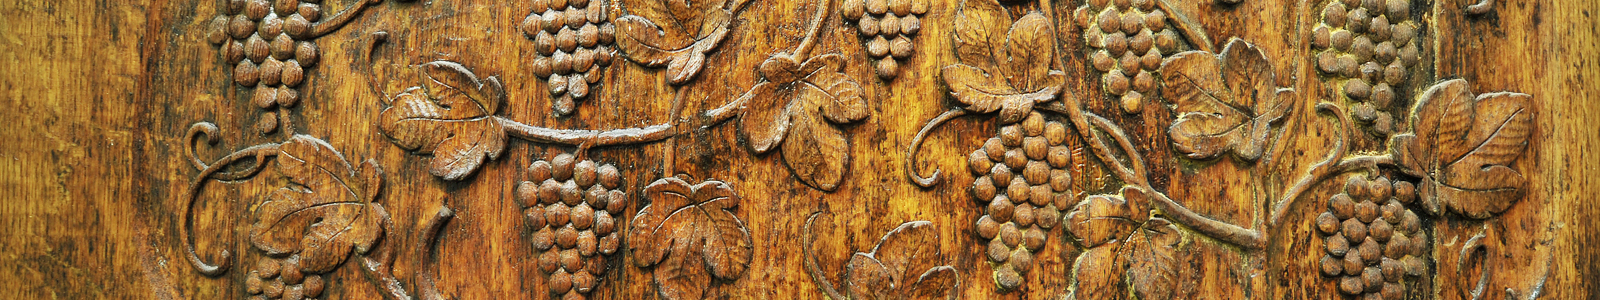 In Holz geschnitzte Trauben mit Blättern ©DLR